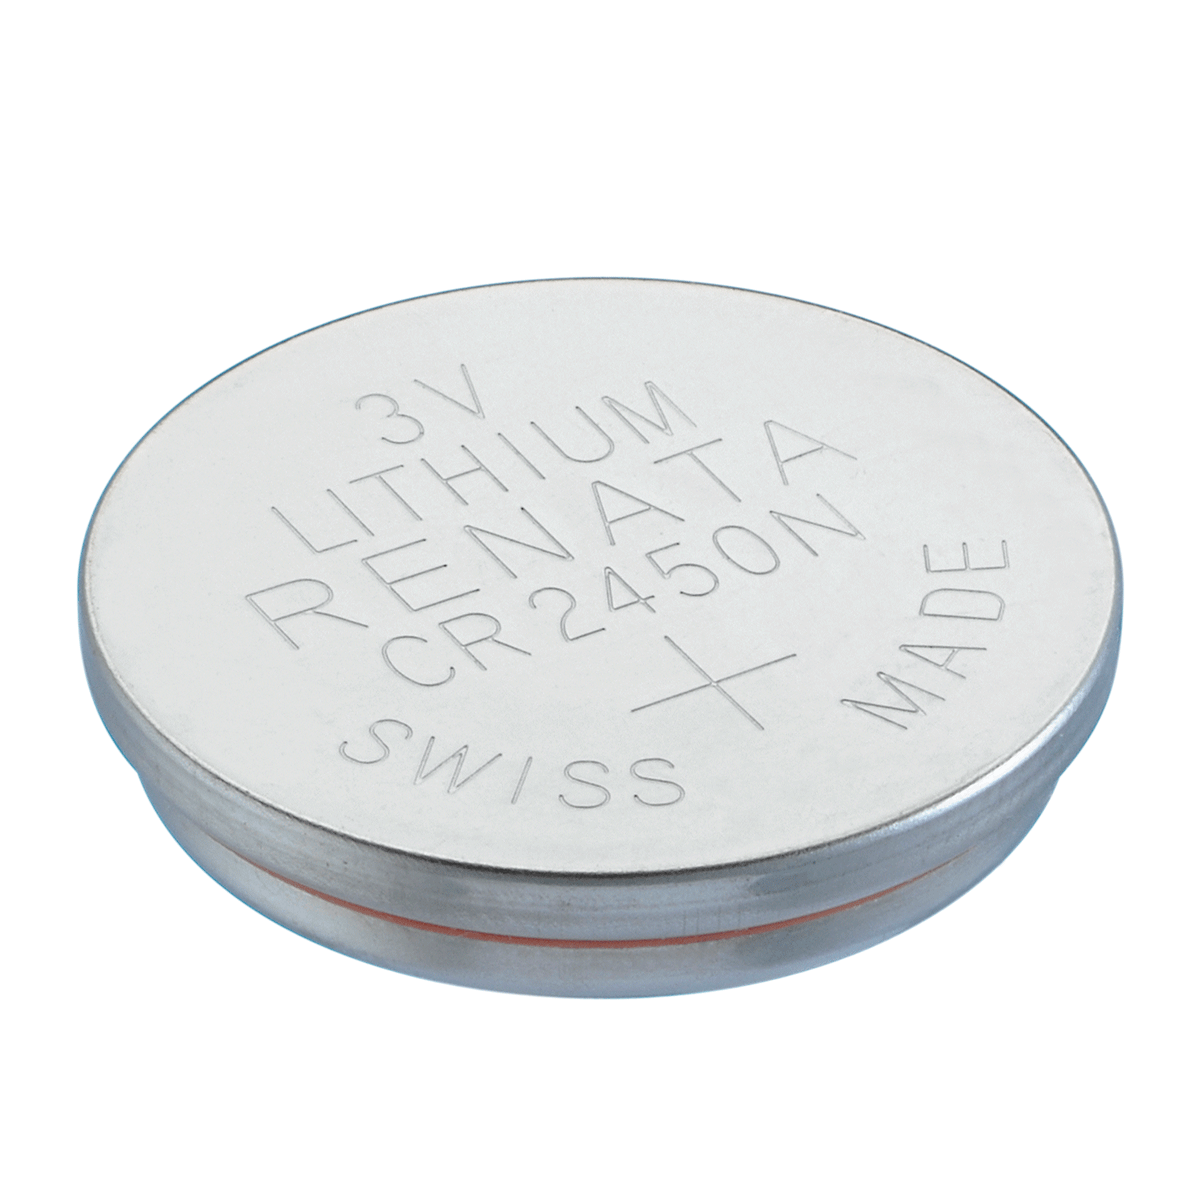 Renata CR2450N Battery 3V Lithium Coin Cell, Bulk